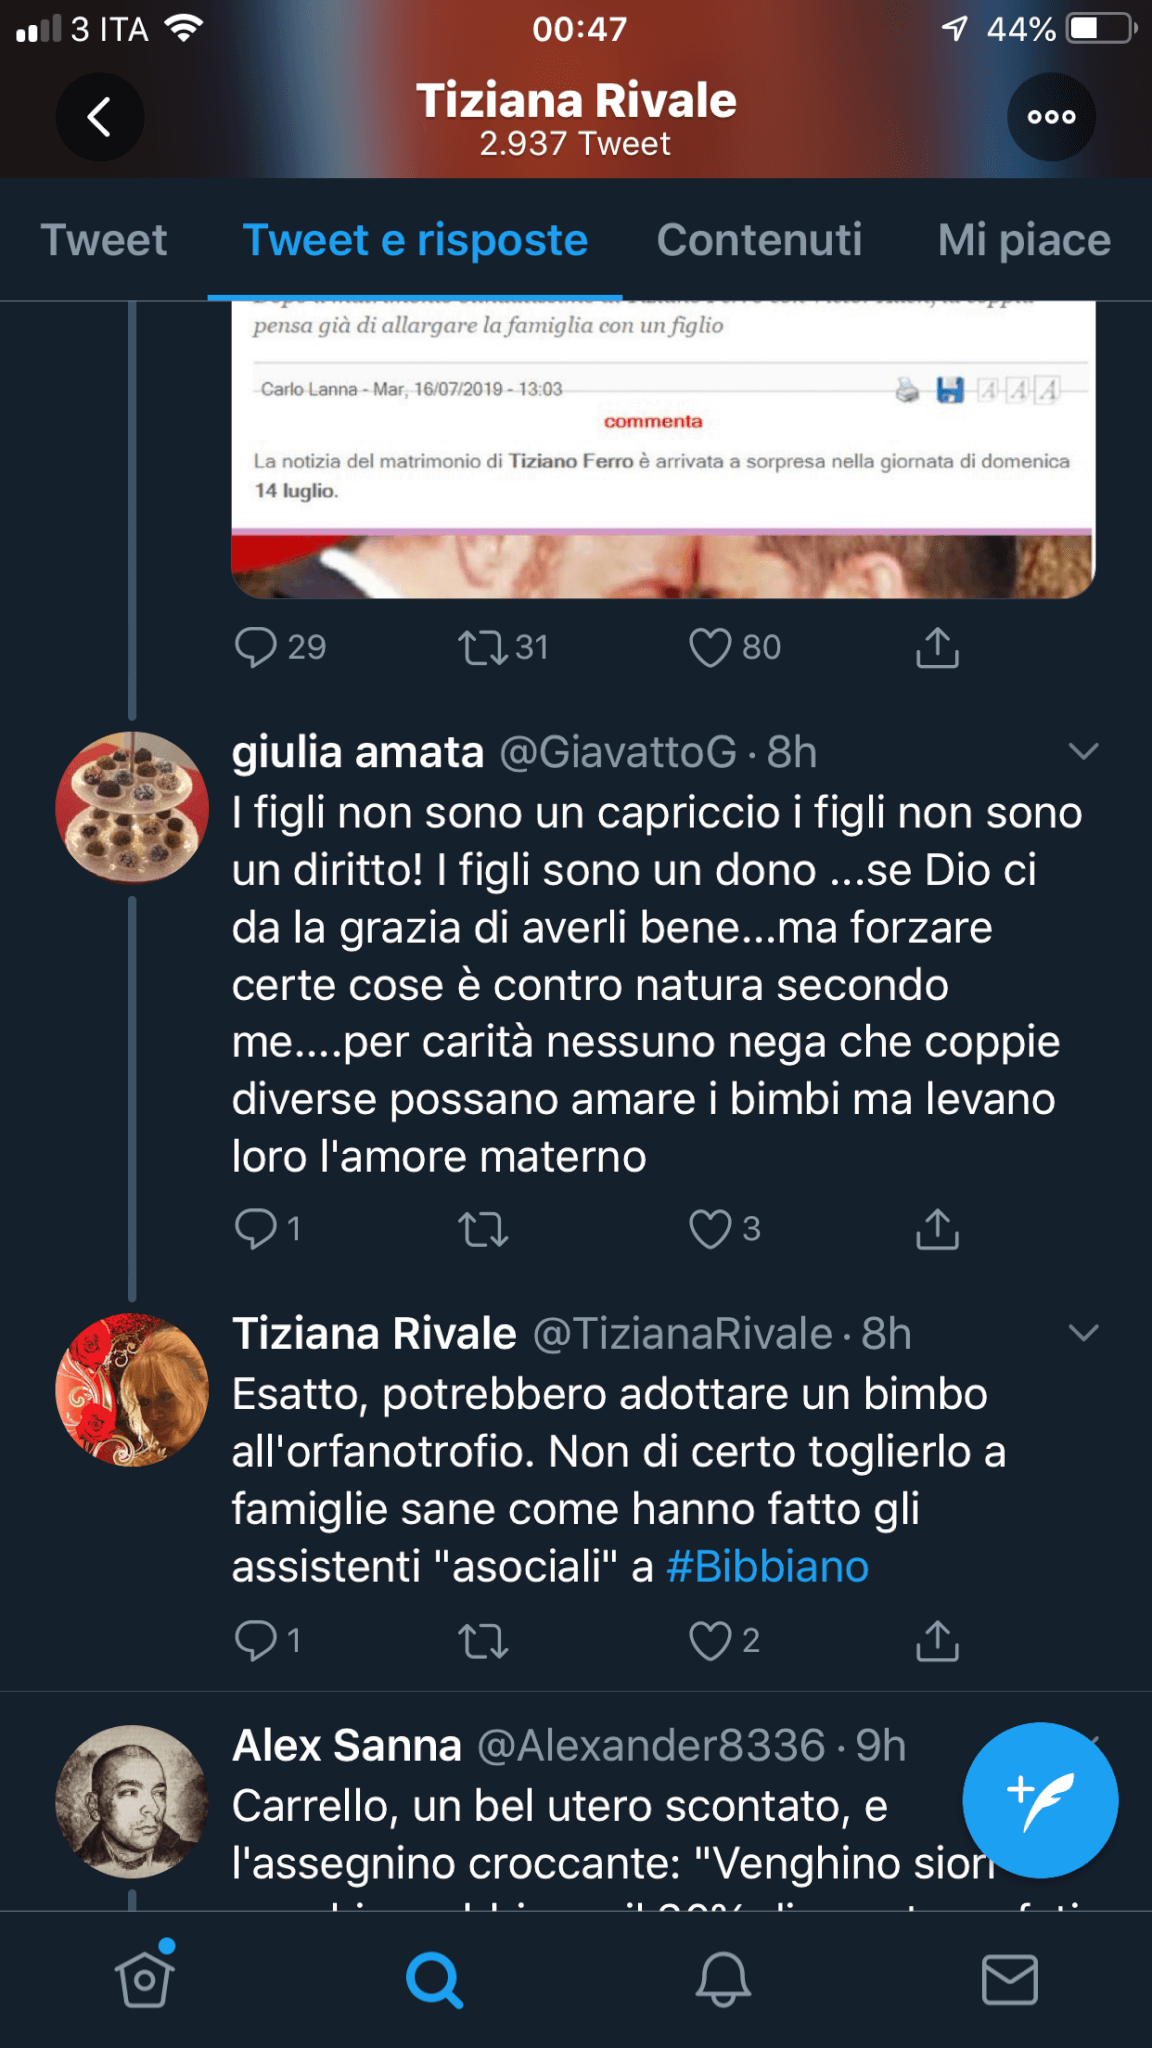 Tiziana Rivale contro Tiziano Ferro: "I figli vengono partoriti dalle donne, adottasse" - IMG 4862 - Gay.it